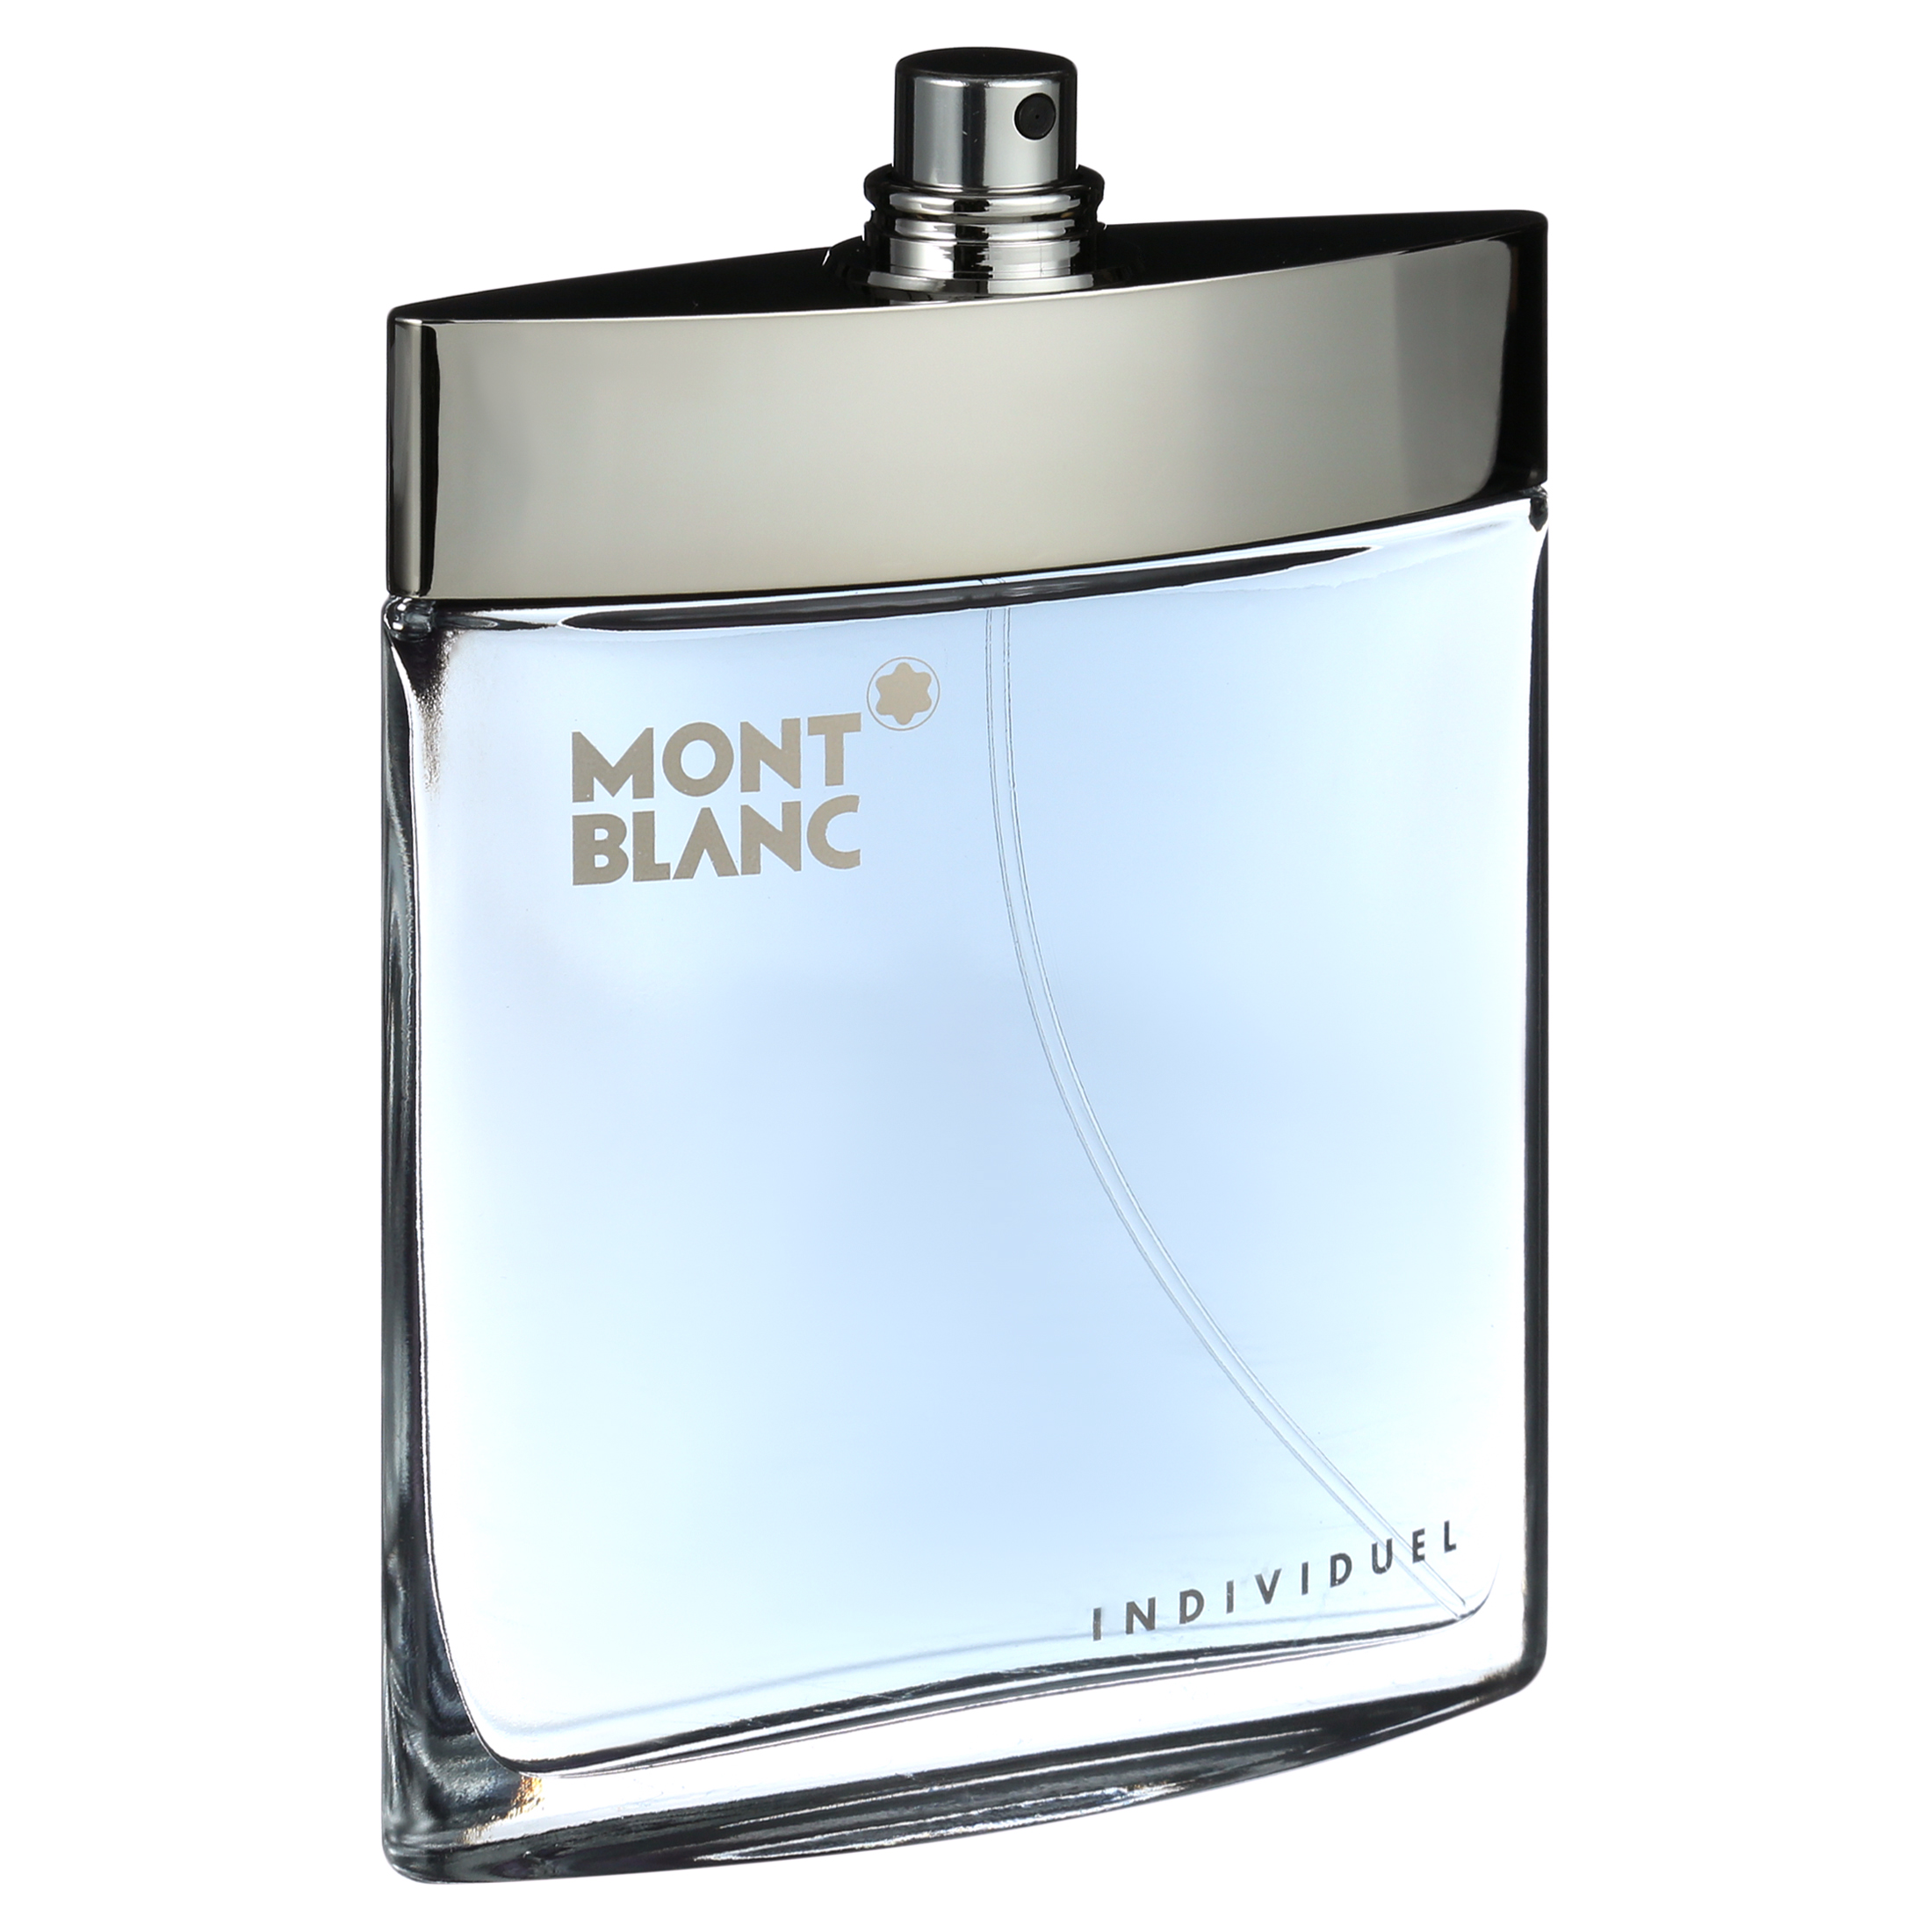 Mont Blanc Individuelle Eau De Toilette Spray for Men 2.5 oz - image 3 of 5